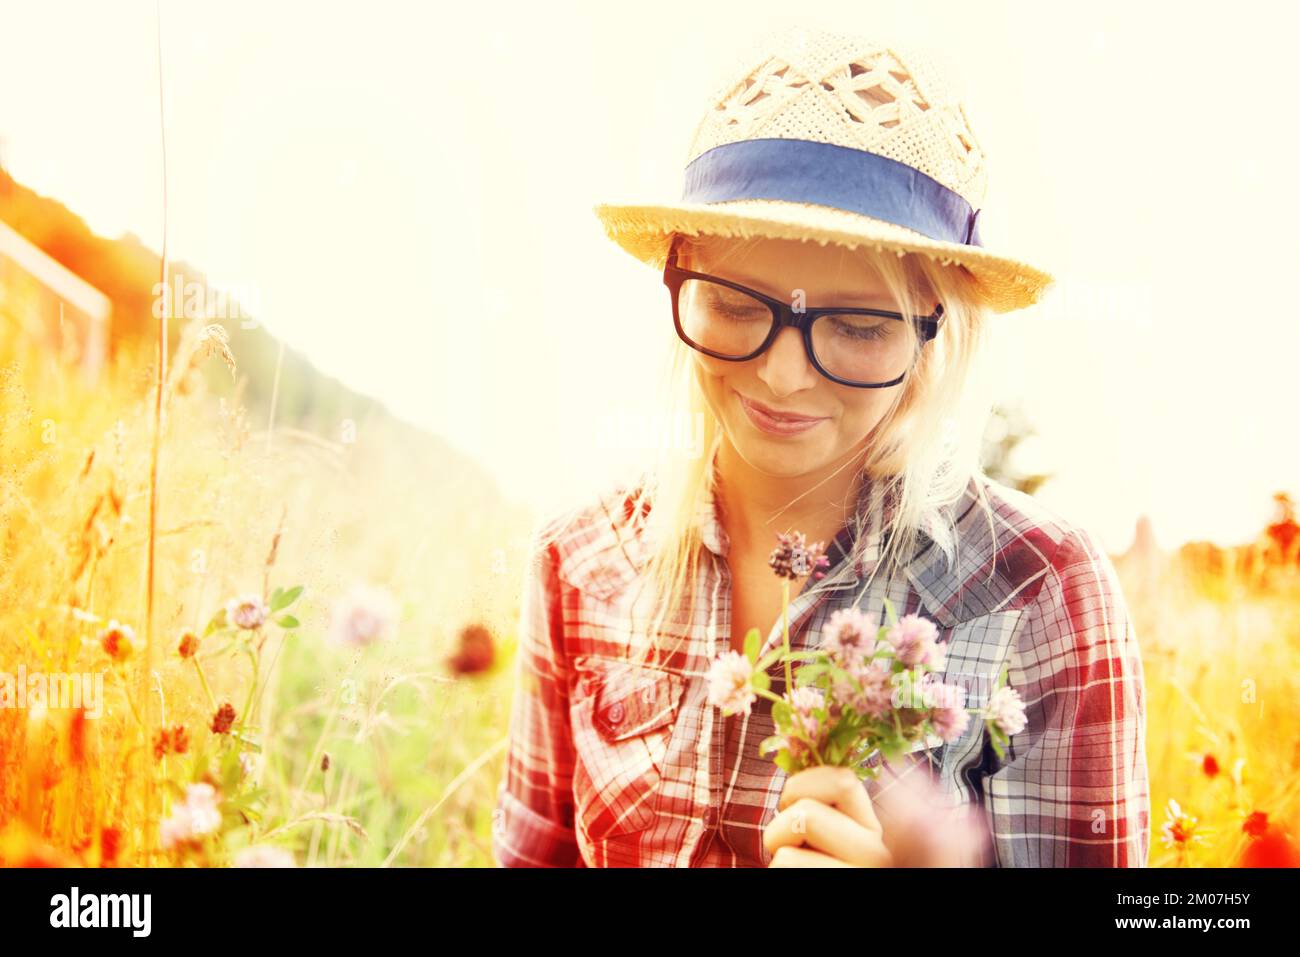 Wildblumen pflücken. Wunderschöner junger Hipster auf einem Feld mit einem Haufen Wildblumen - Lomo-Fotografie. Stockfoto